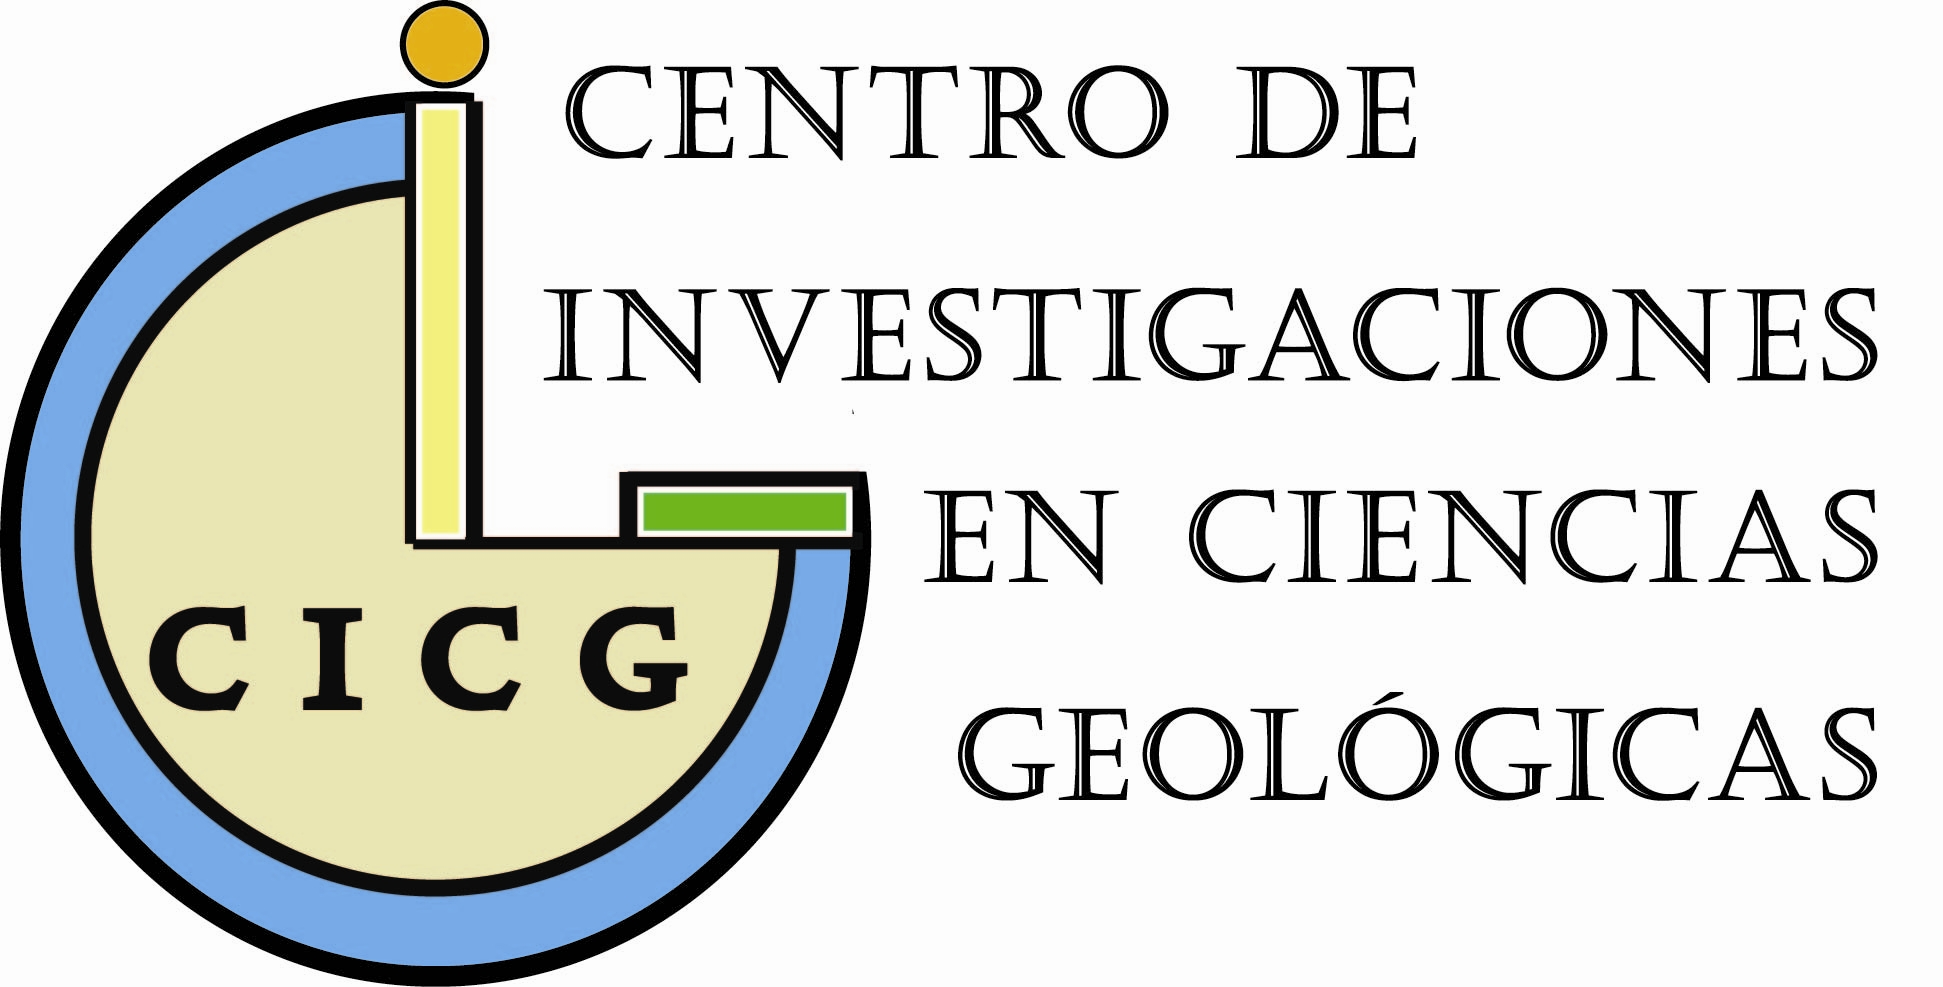 Centro de Investigación en Ciencias Geológicas (CICG)